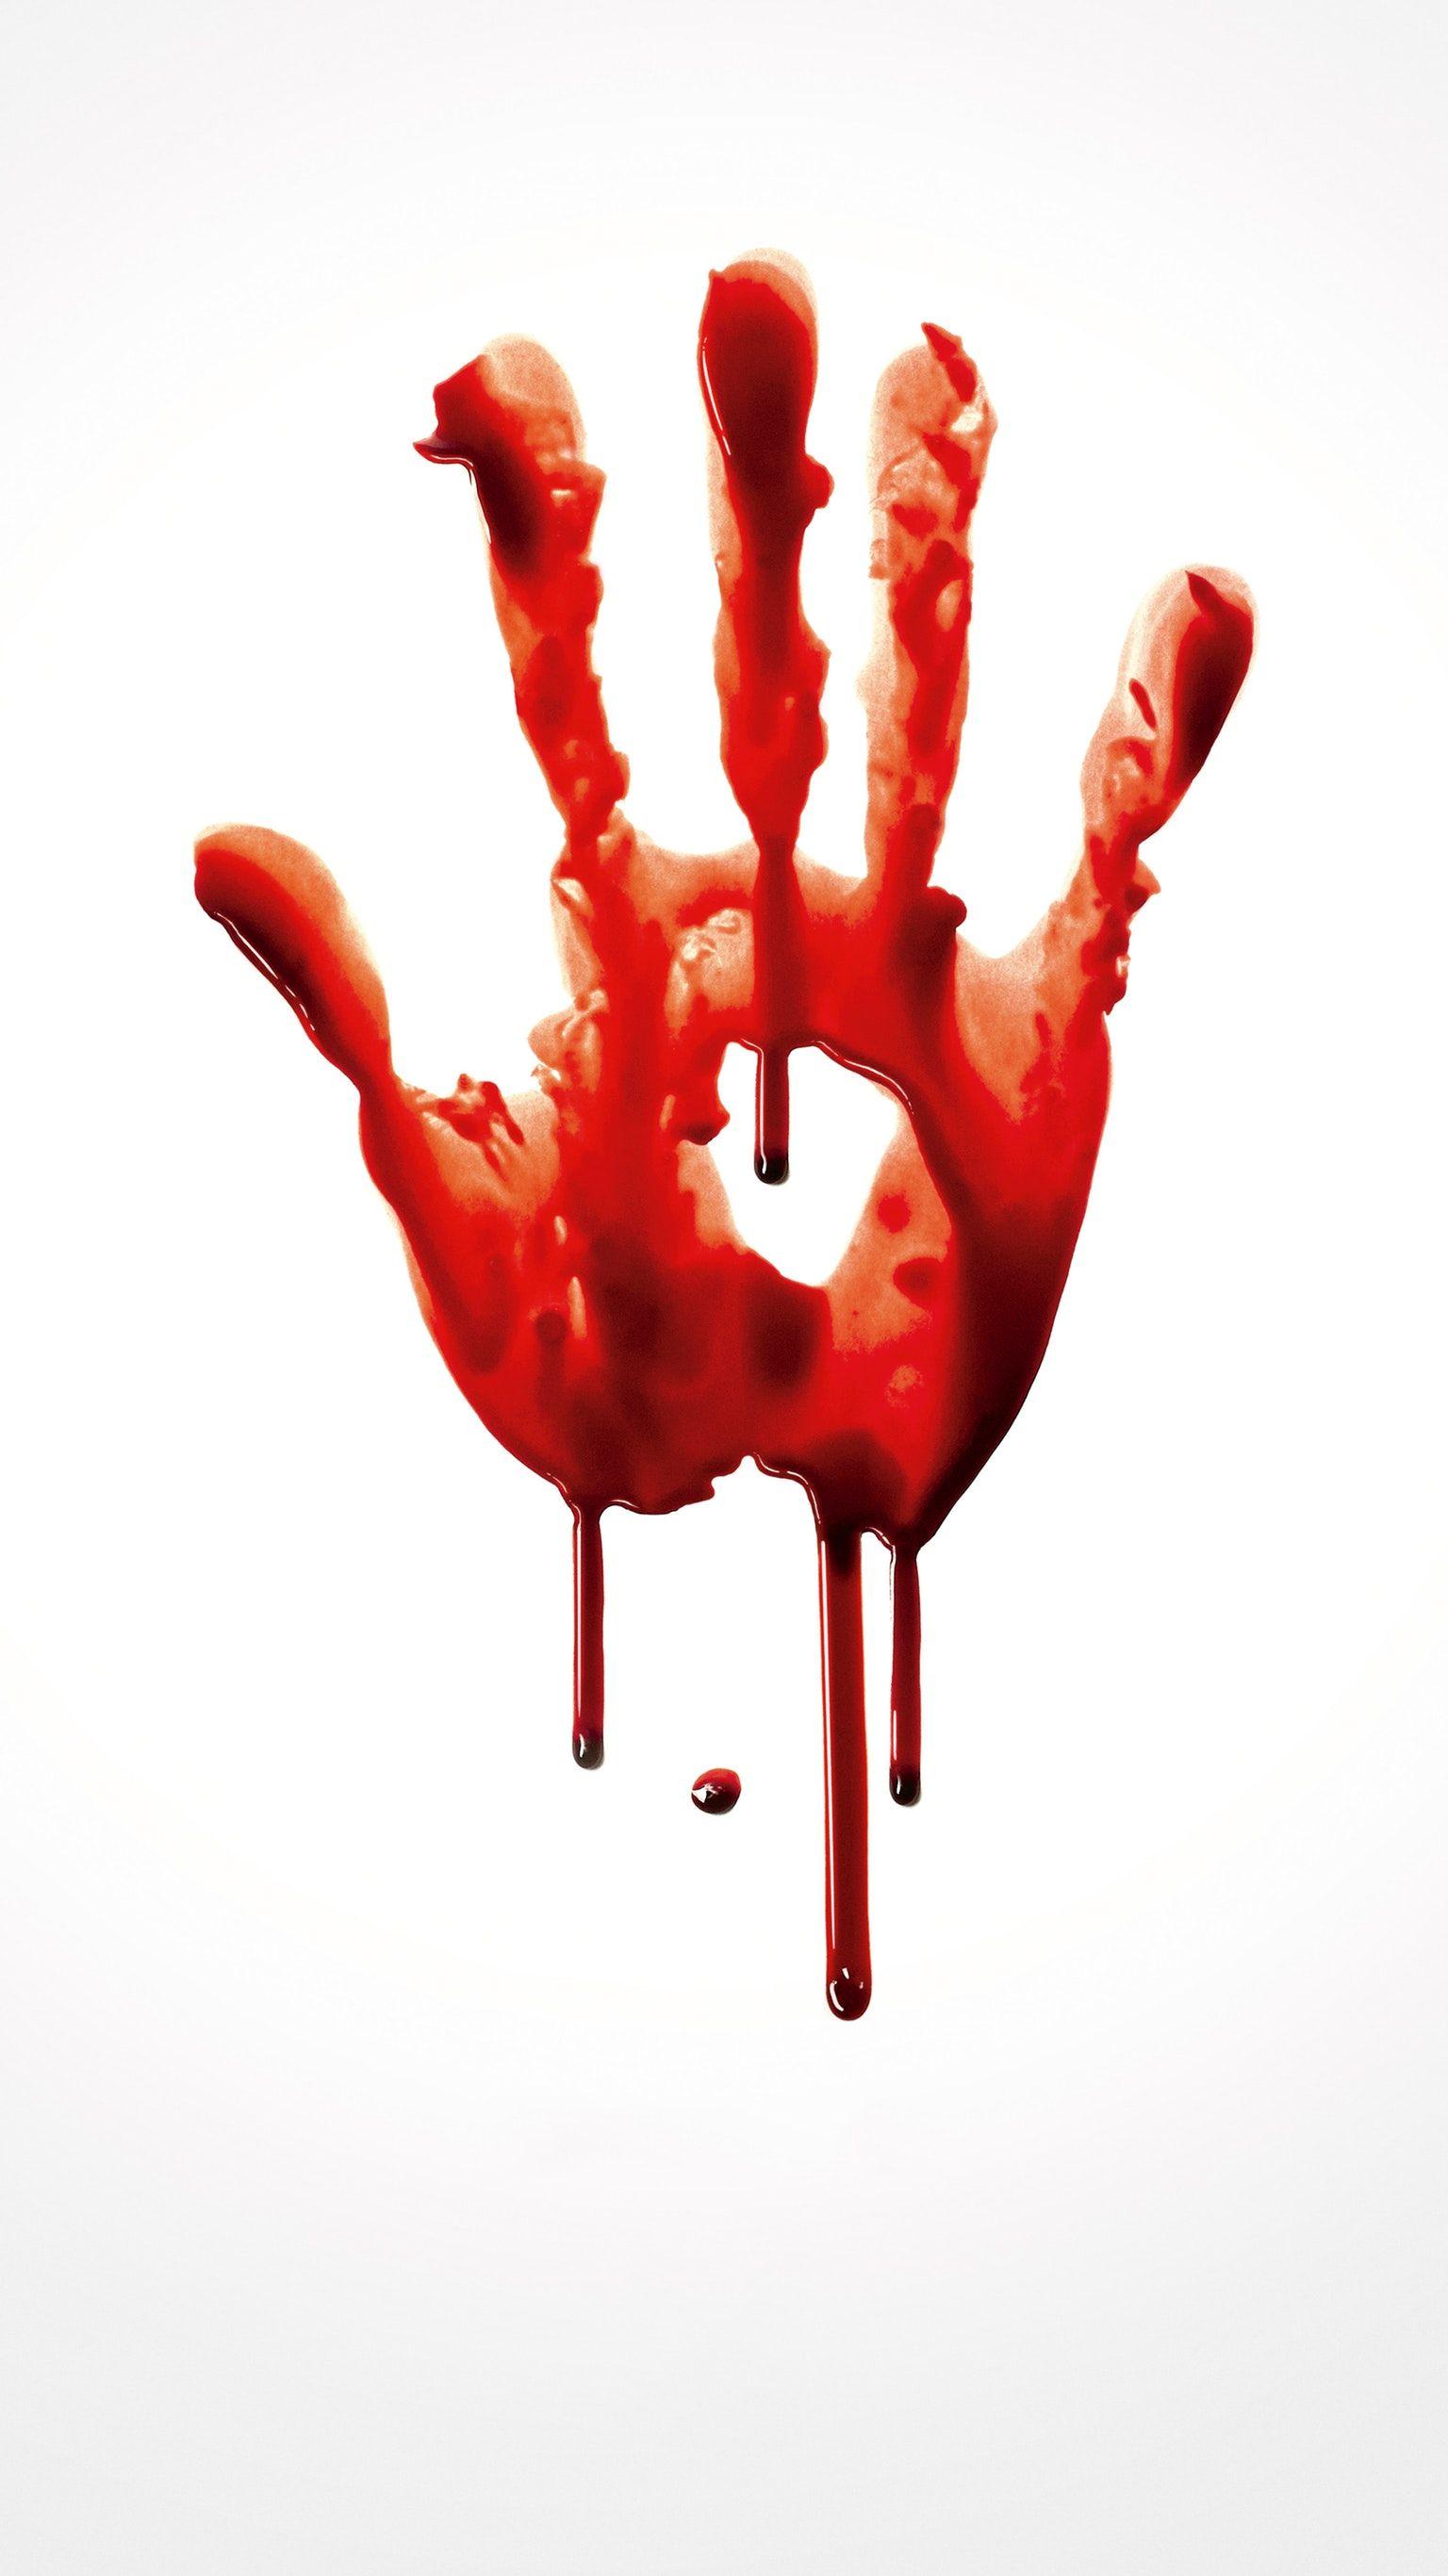 True Blood Phone Wallpaper. I PAD. True blood, Wallpaper